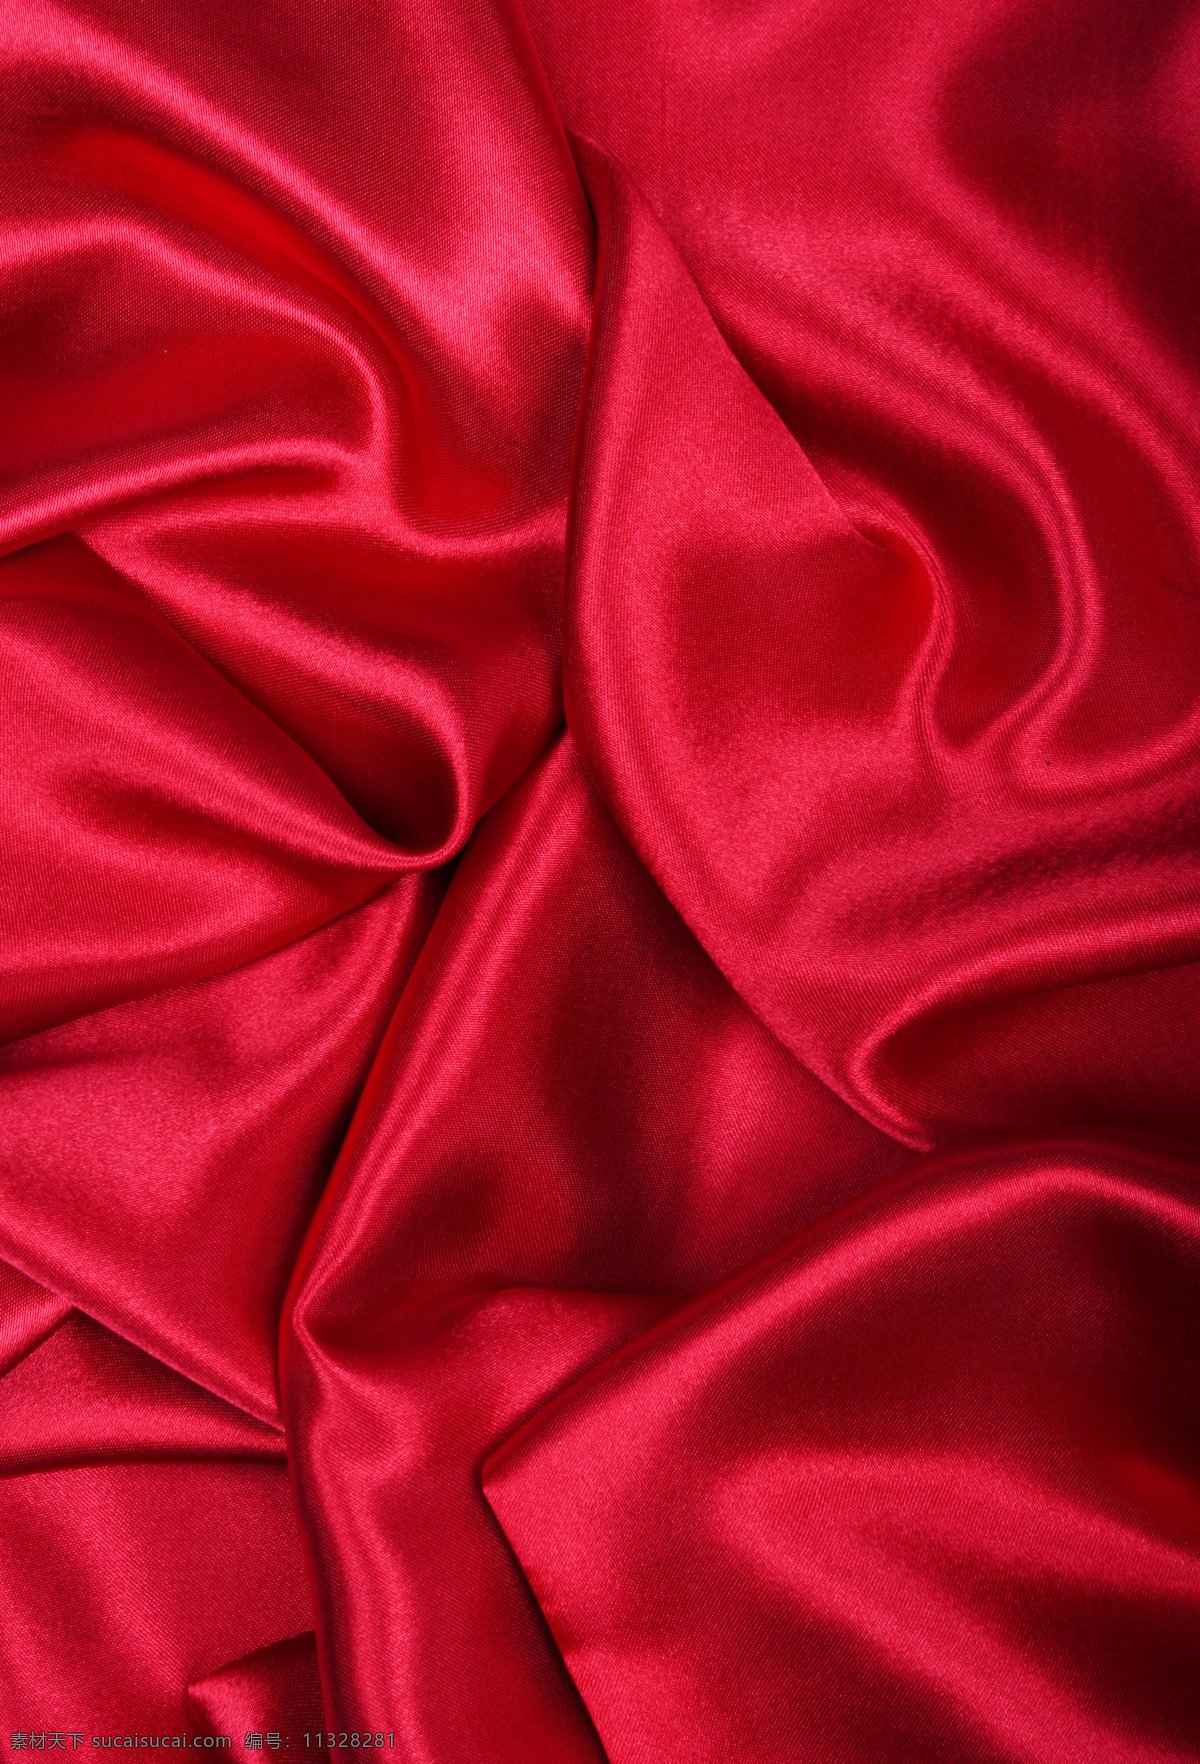 红色 丝绸 背景 红色丝绸背景 褶皱 优美线条 高贵典雅 珠宝服饰 生活百科